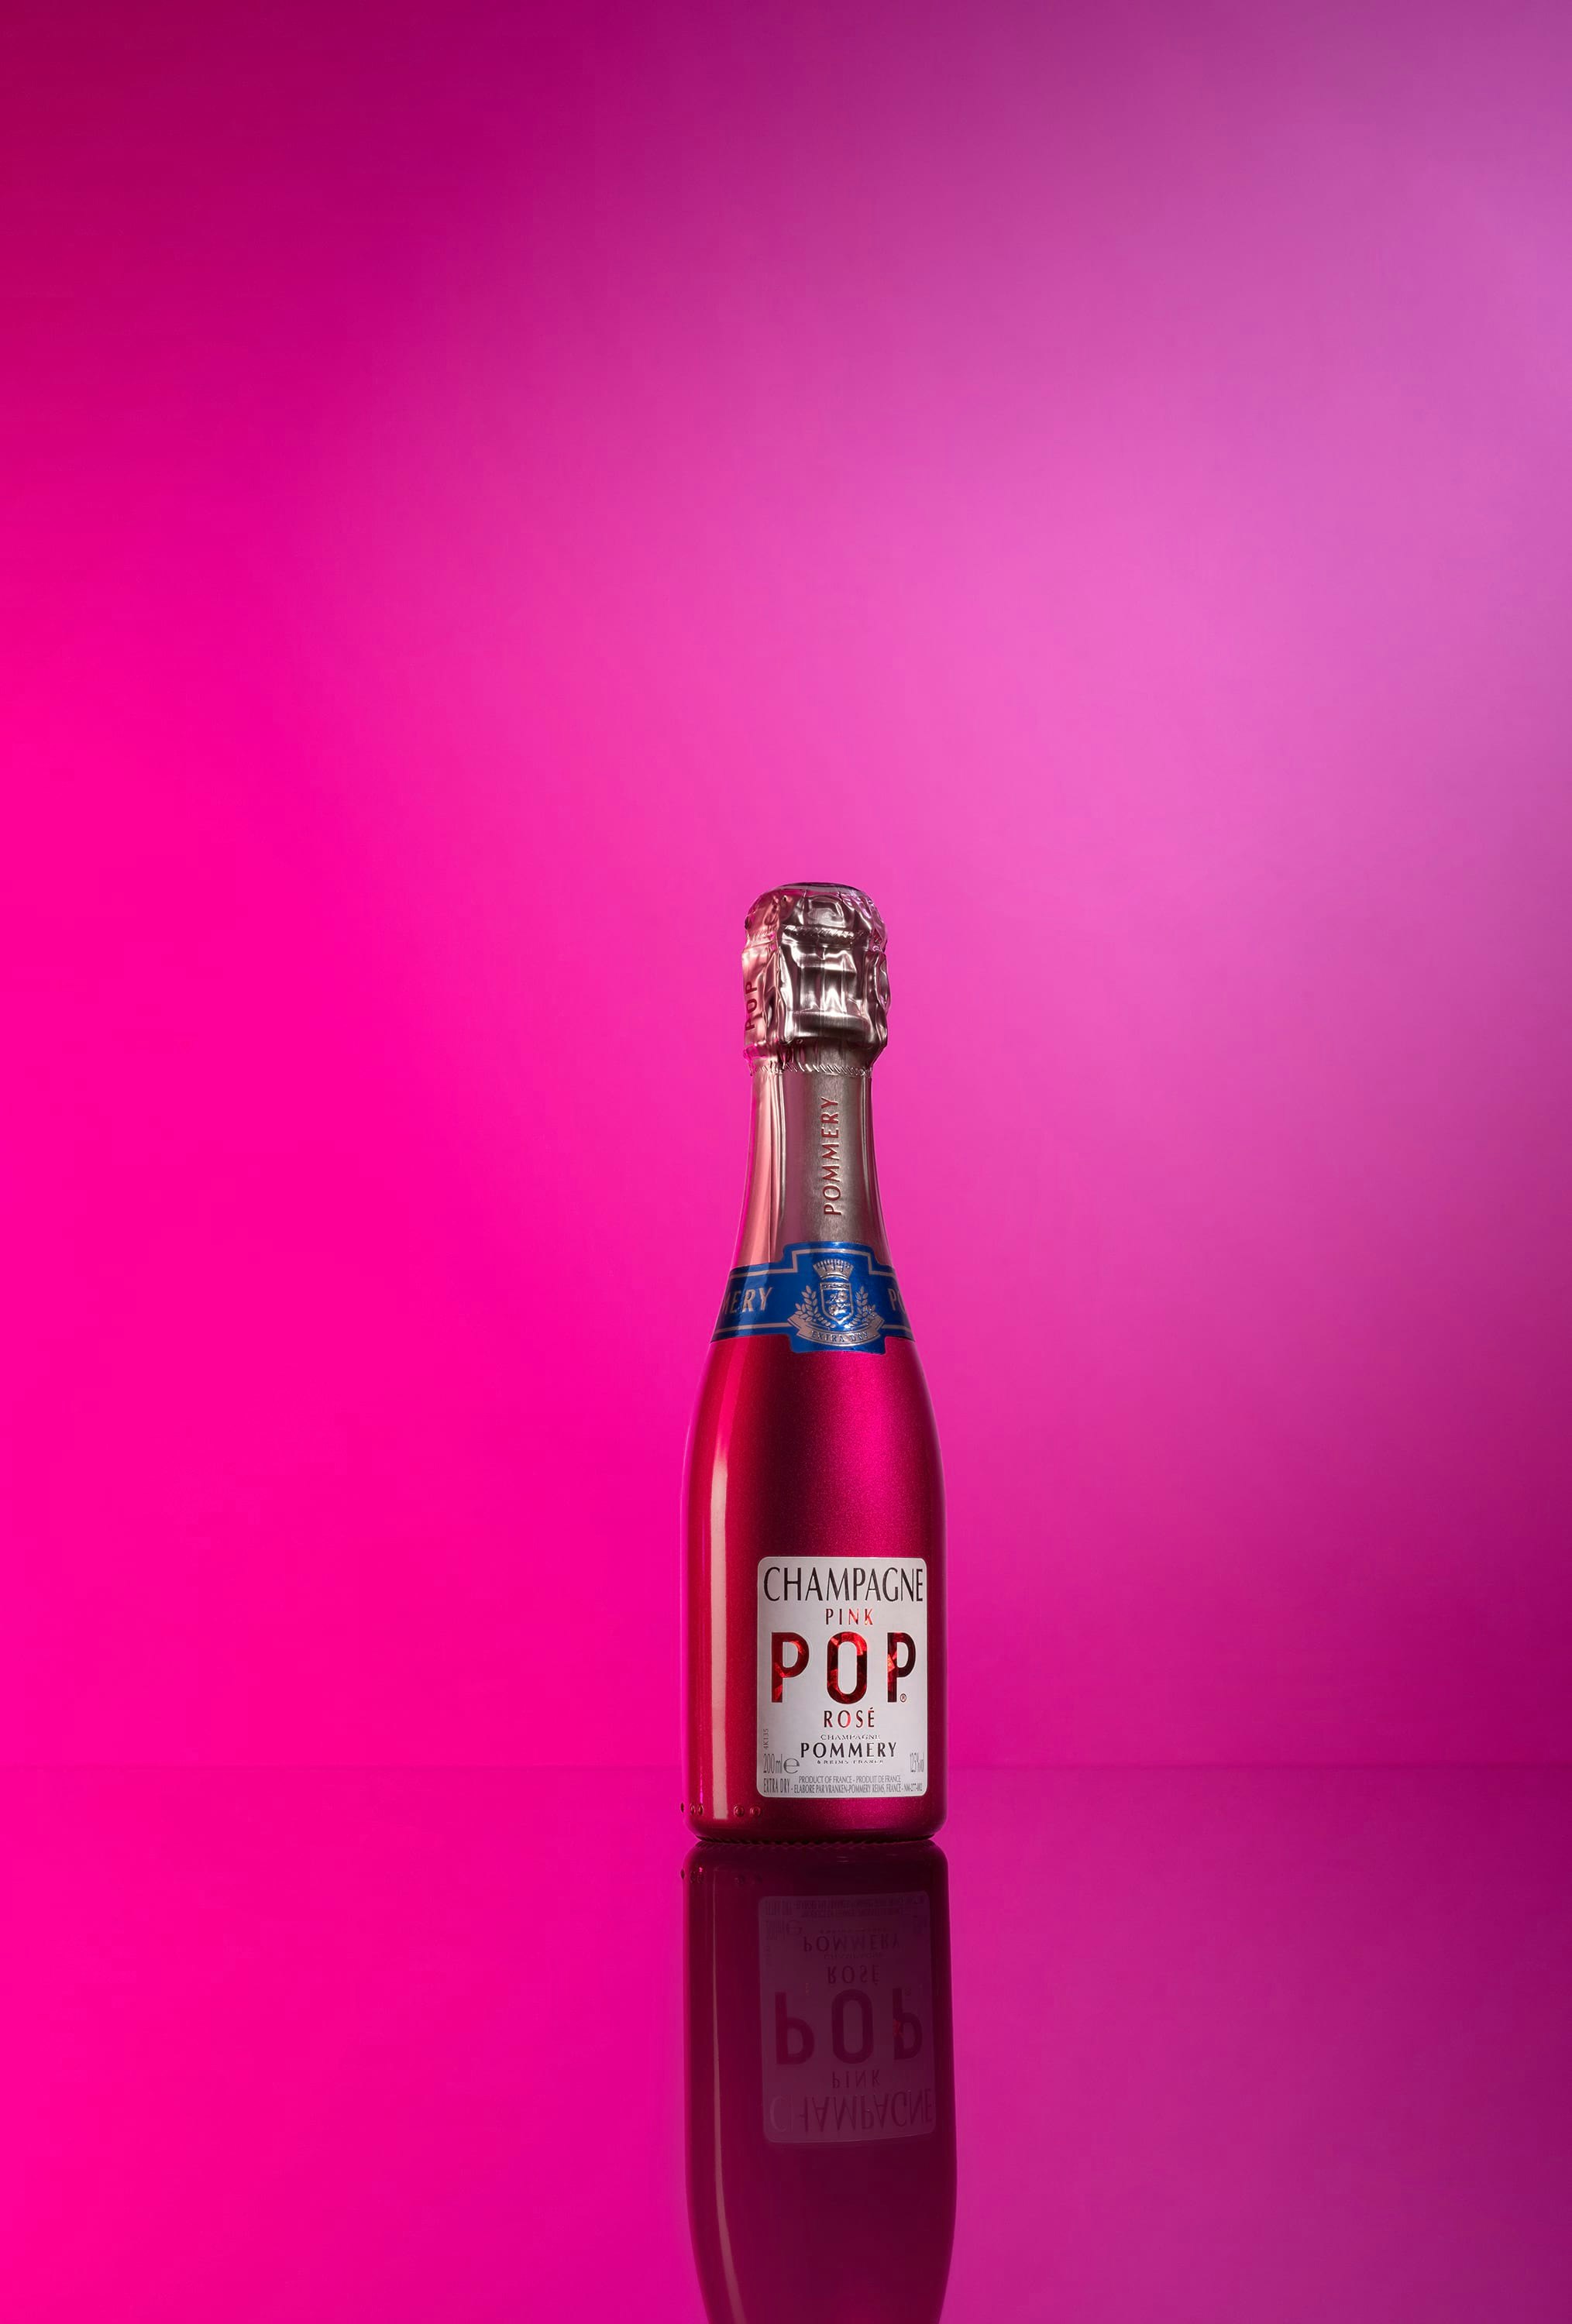 Quart de bouteille de Pommery Pink Pop 20cl sur fond rose